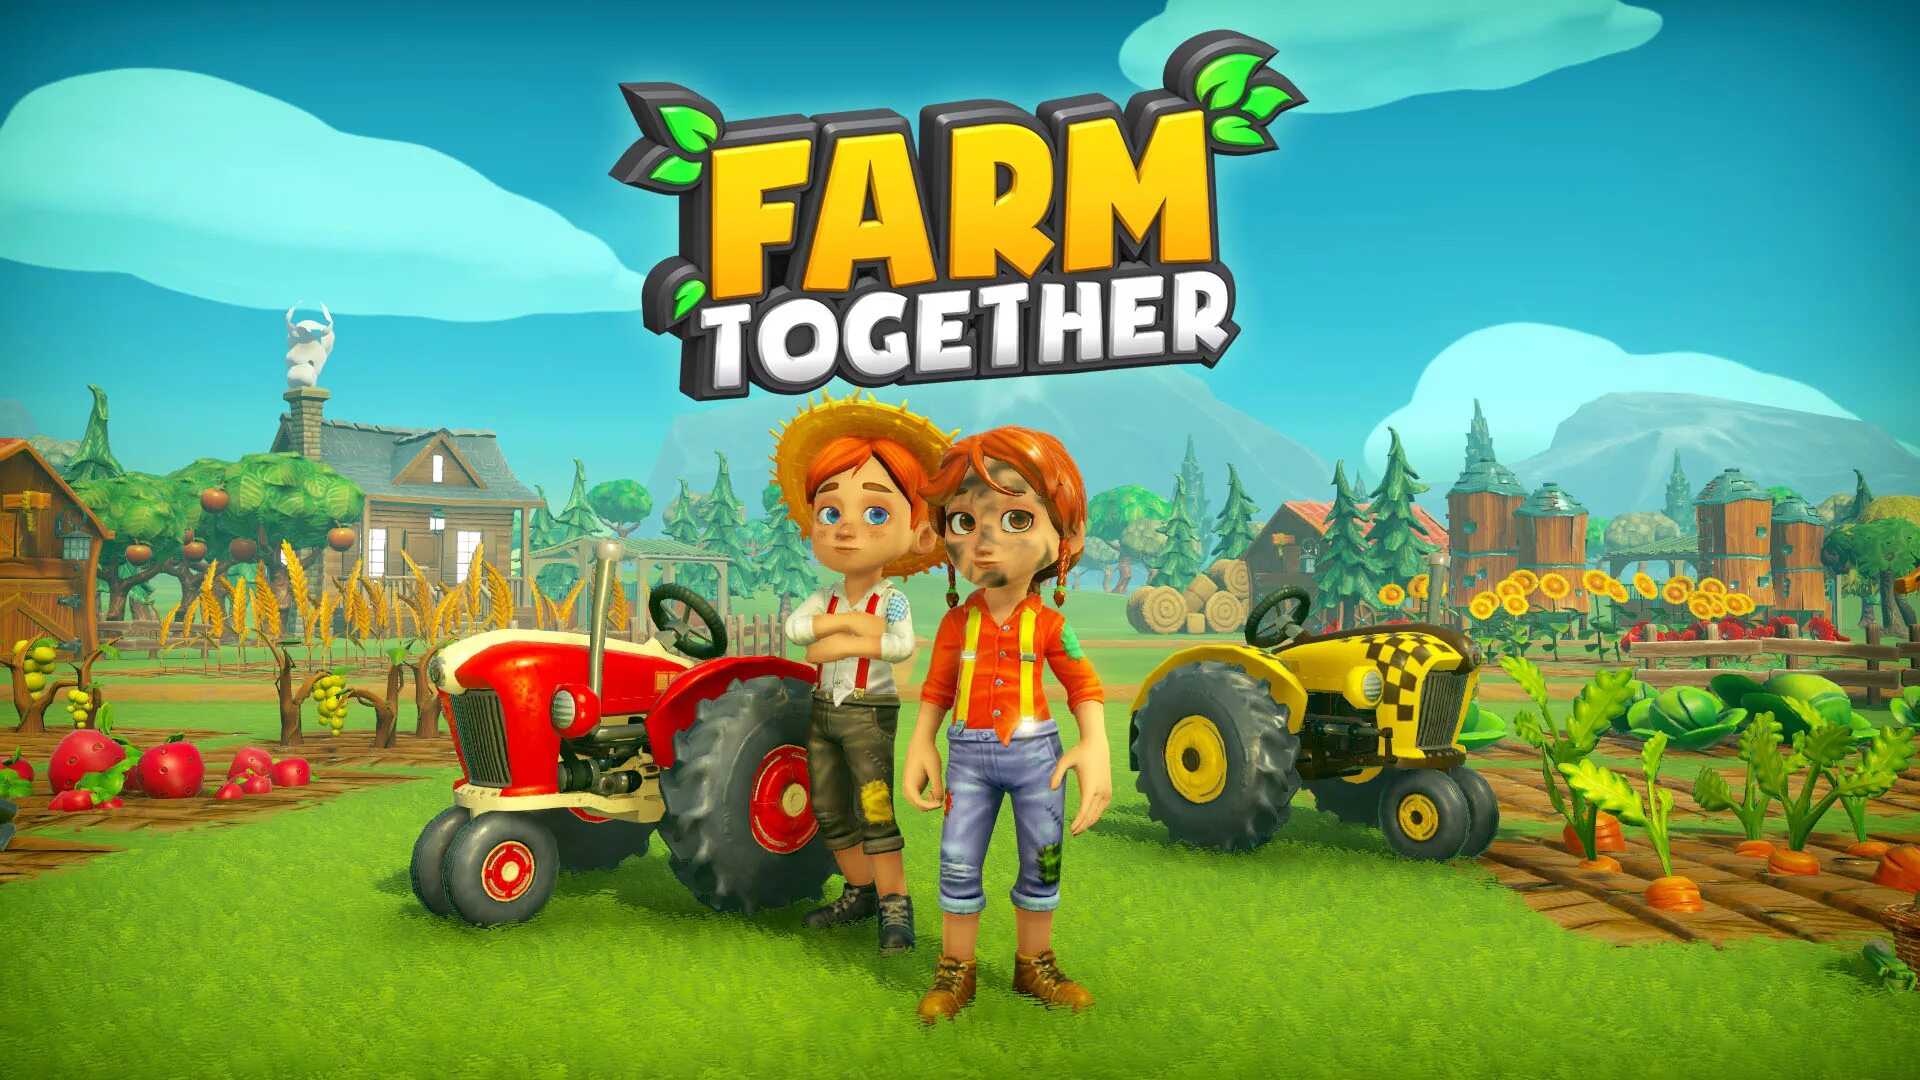 Игра Farm together. Farm together обложка. Farm together фермы красивые. Красивые фермы в игре Farm together.